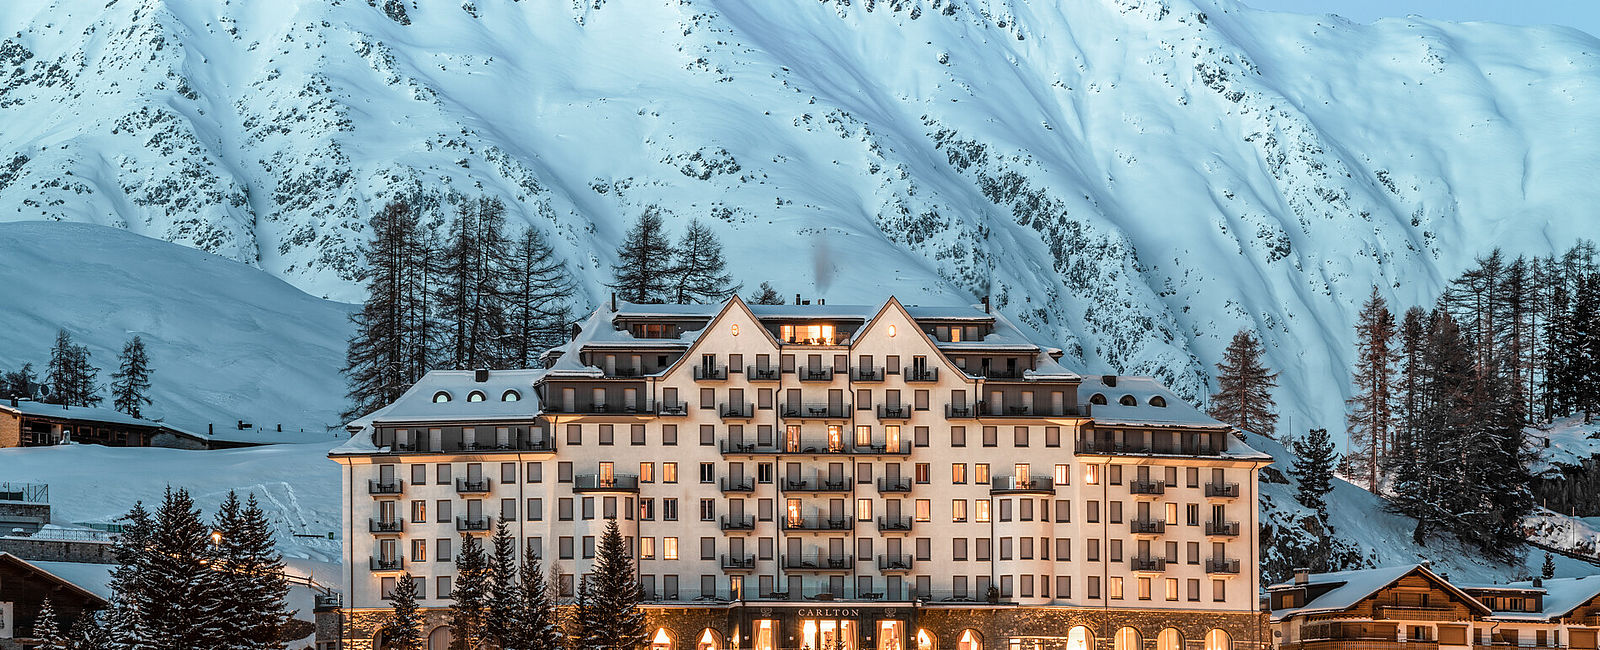 HOTEL NEWS
 Max Herzog wird neuer Culinary Director im Carlton Hotel St. Moritz 
